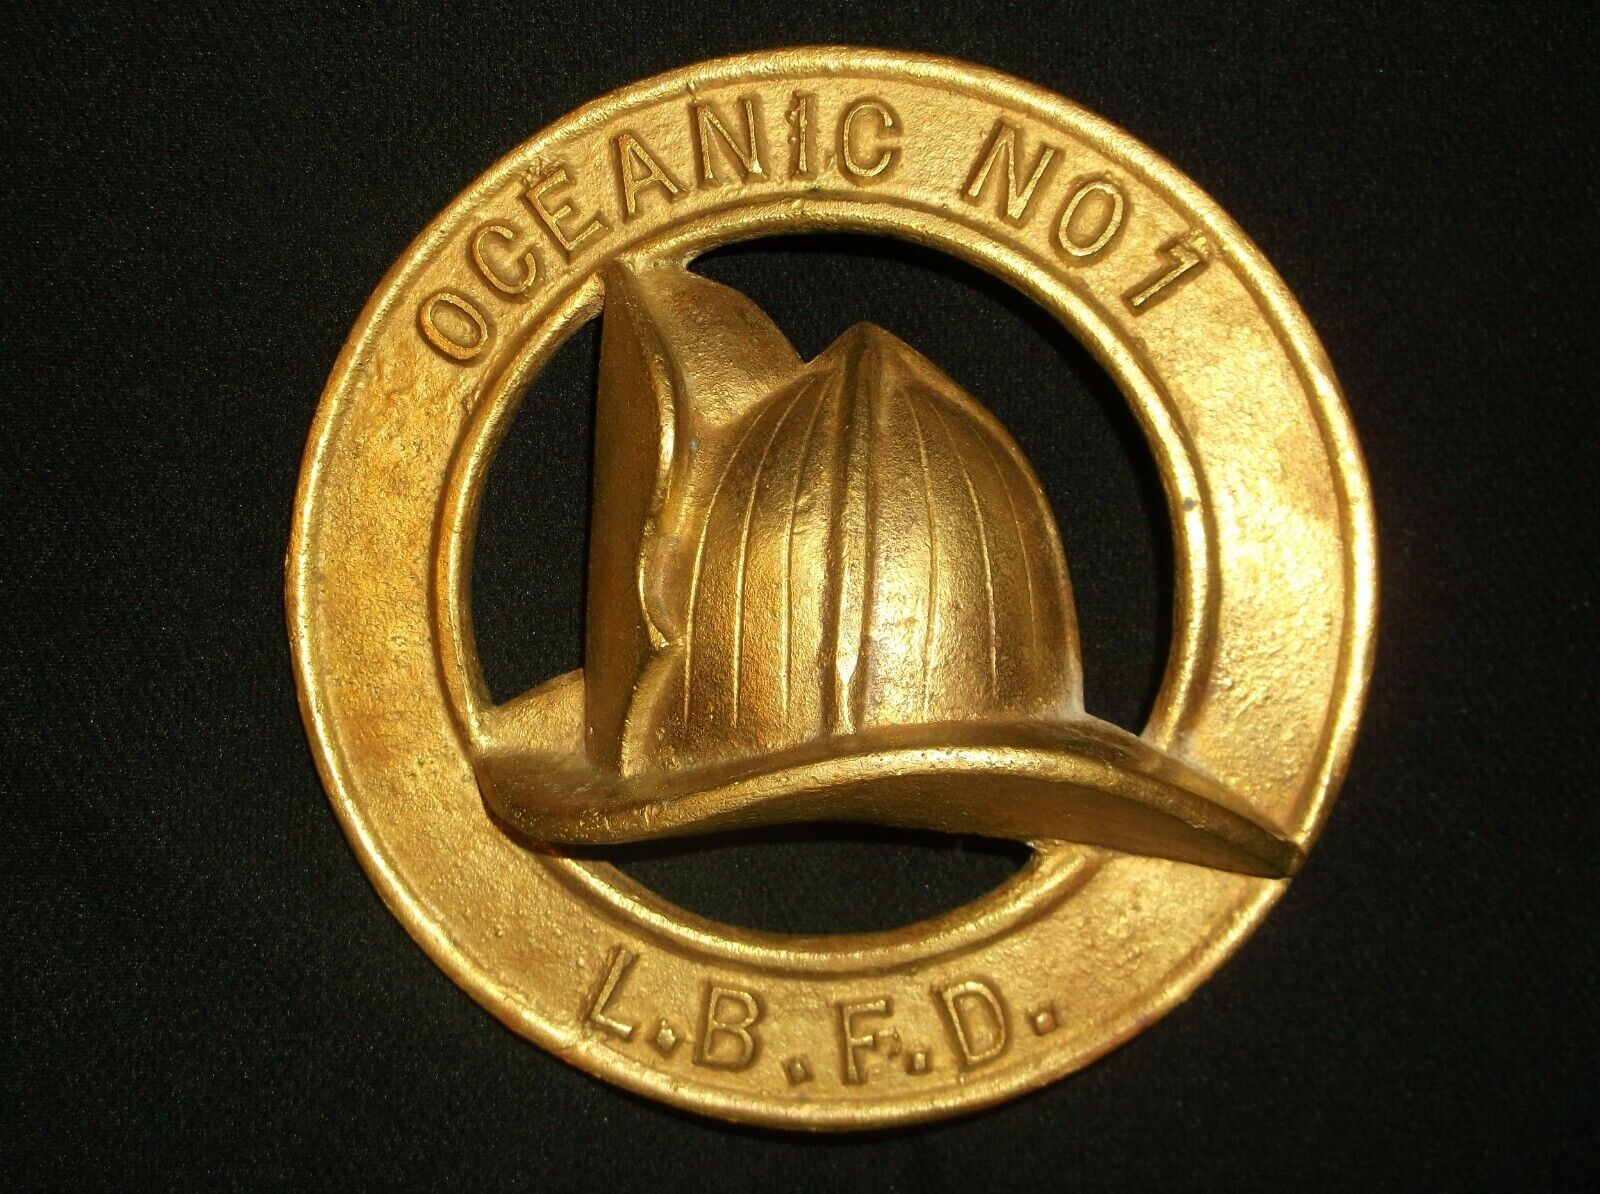 Vintage Brass Oceanic No. 1 Long Beach Fire Department Emblem Plaque Award